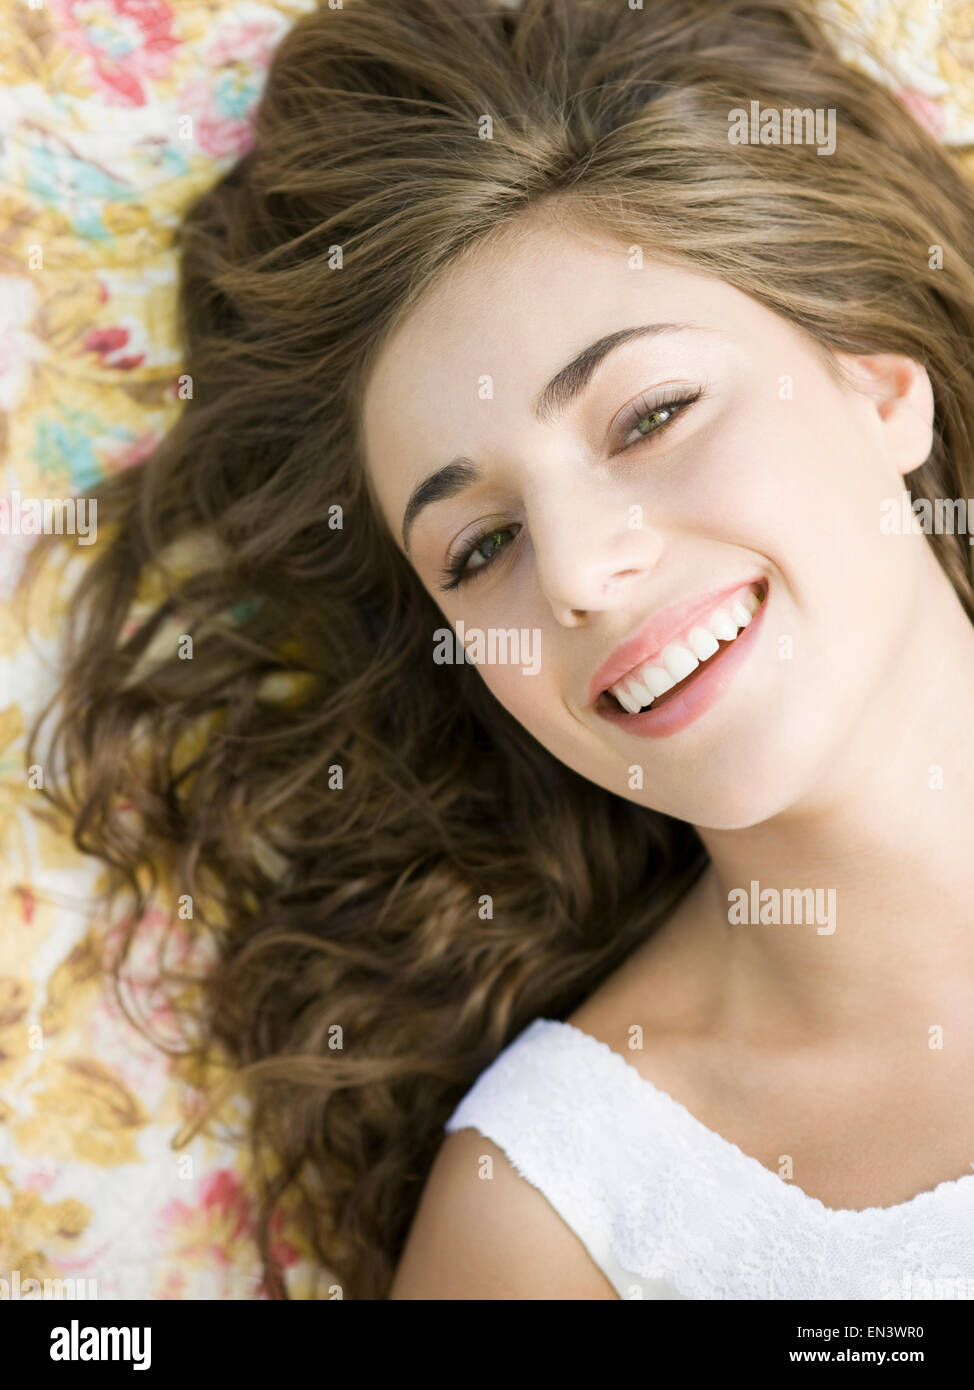 Femme couchée sur une couverture d'impression floral Banque D'Images